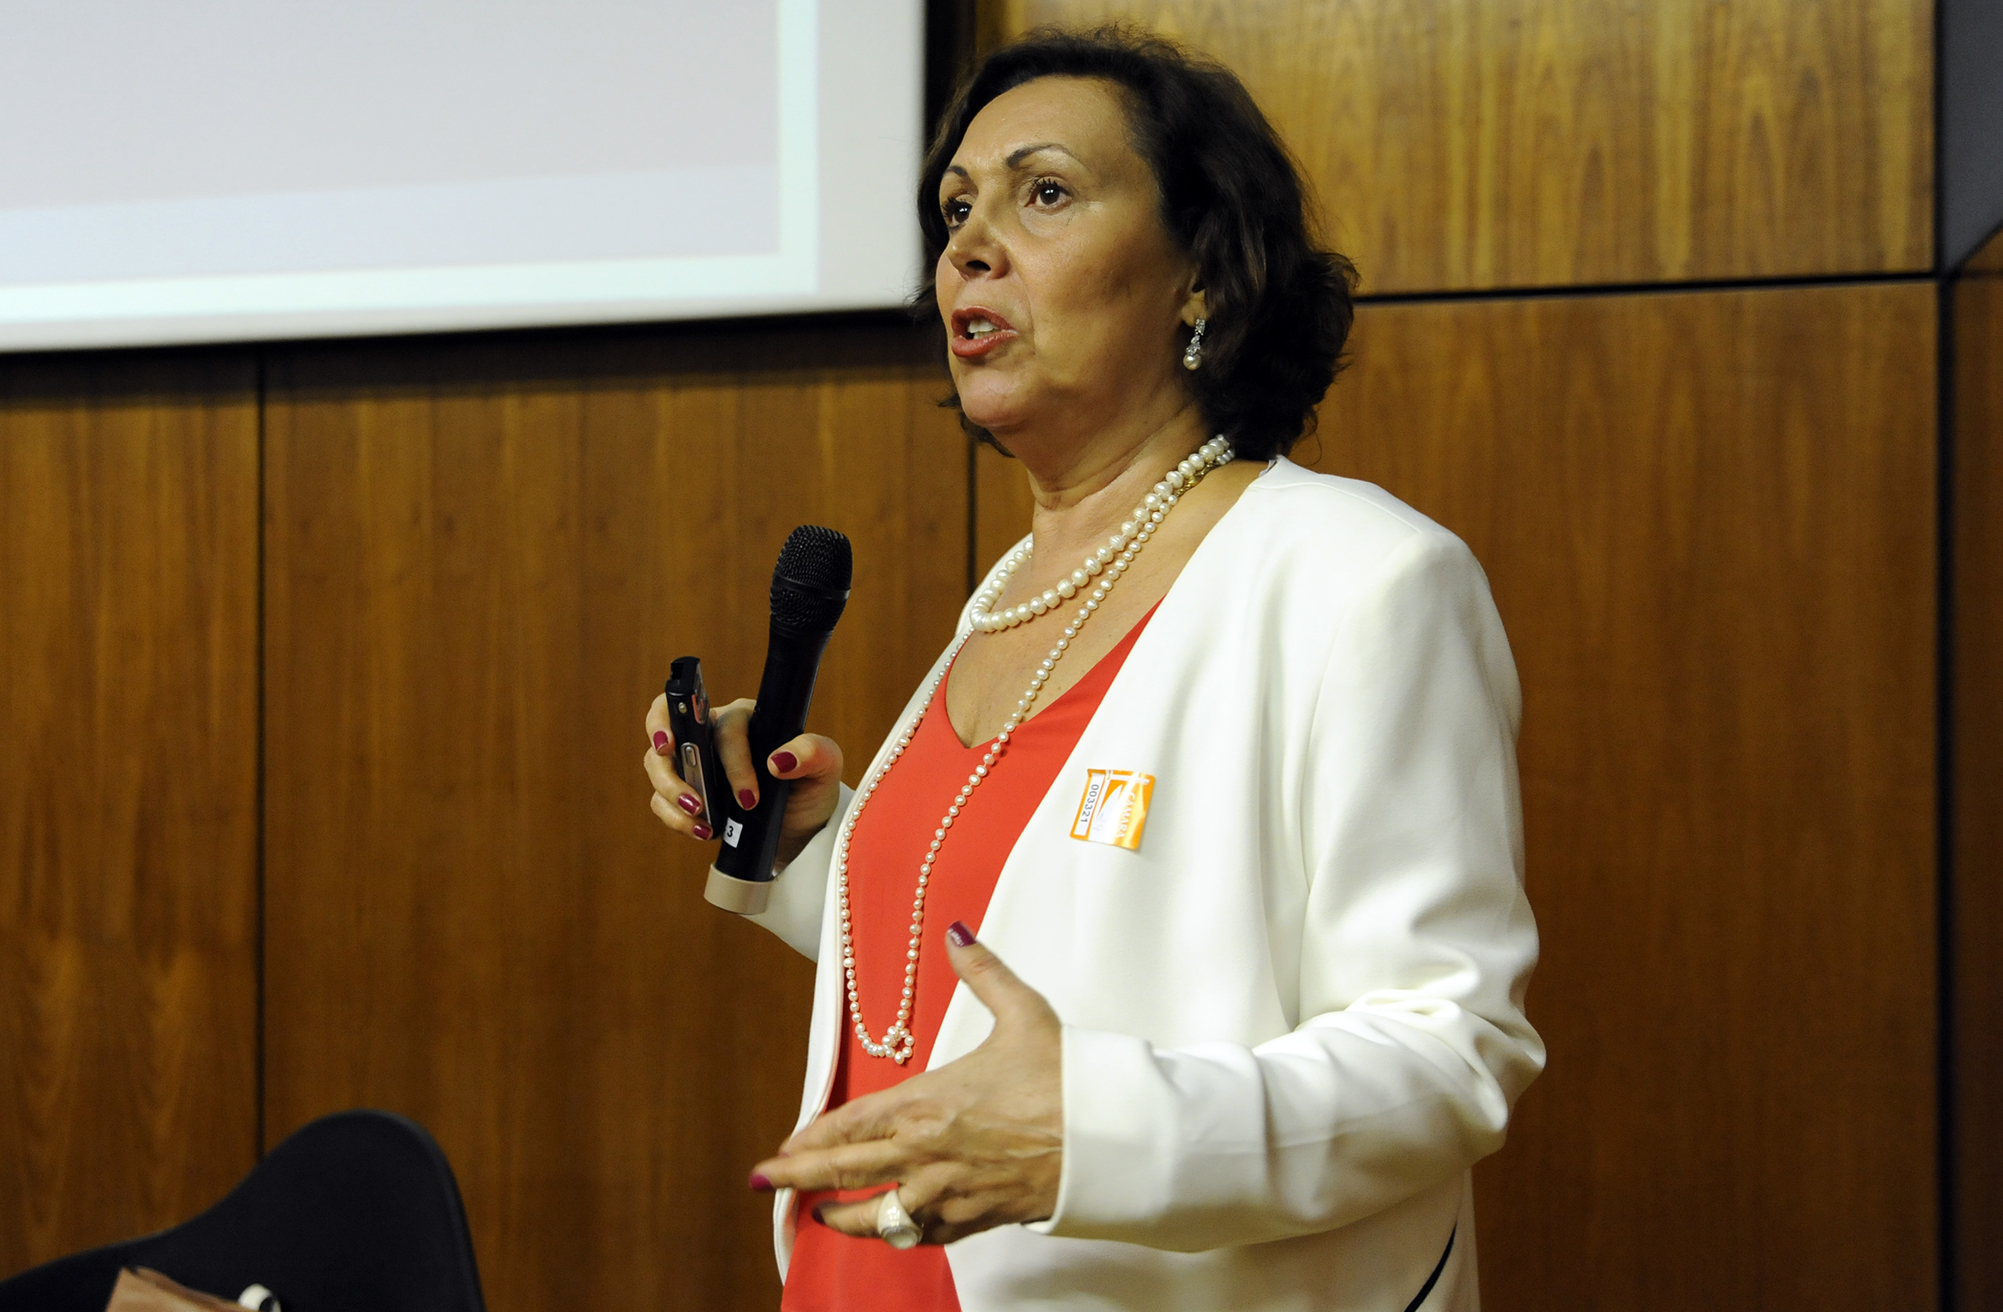 Áudio da Palestra "Mudanças demográficas e políticas públicas", proferida pela Sra. Ana Amélia Camarano